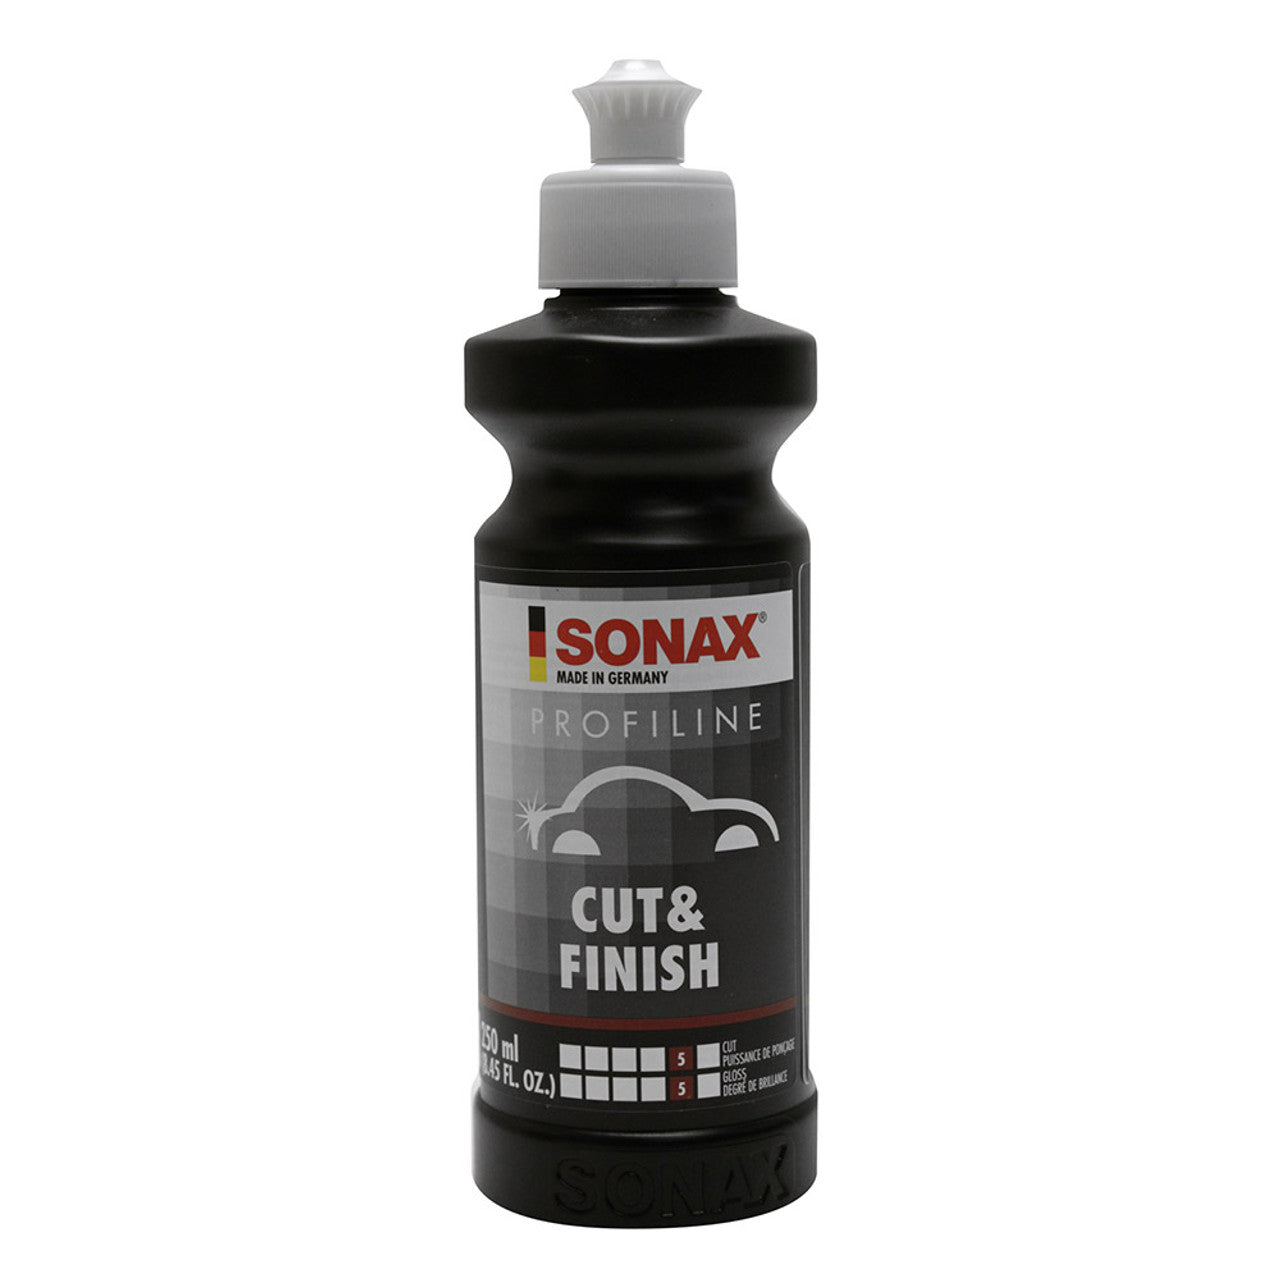 Sonax Cut & Finish - 250ml